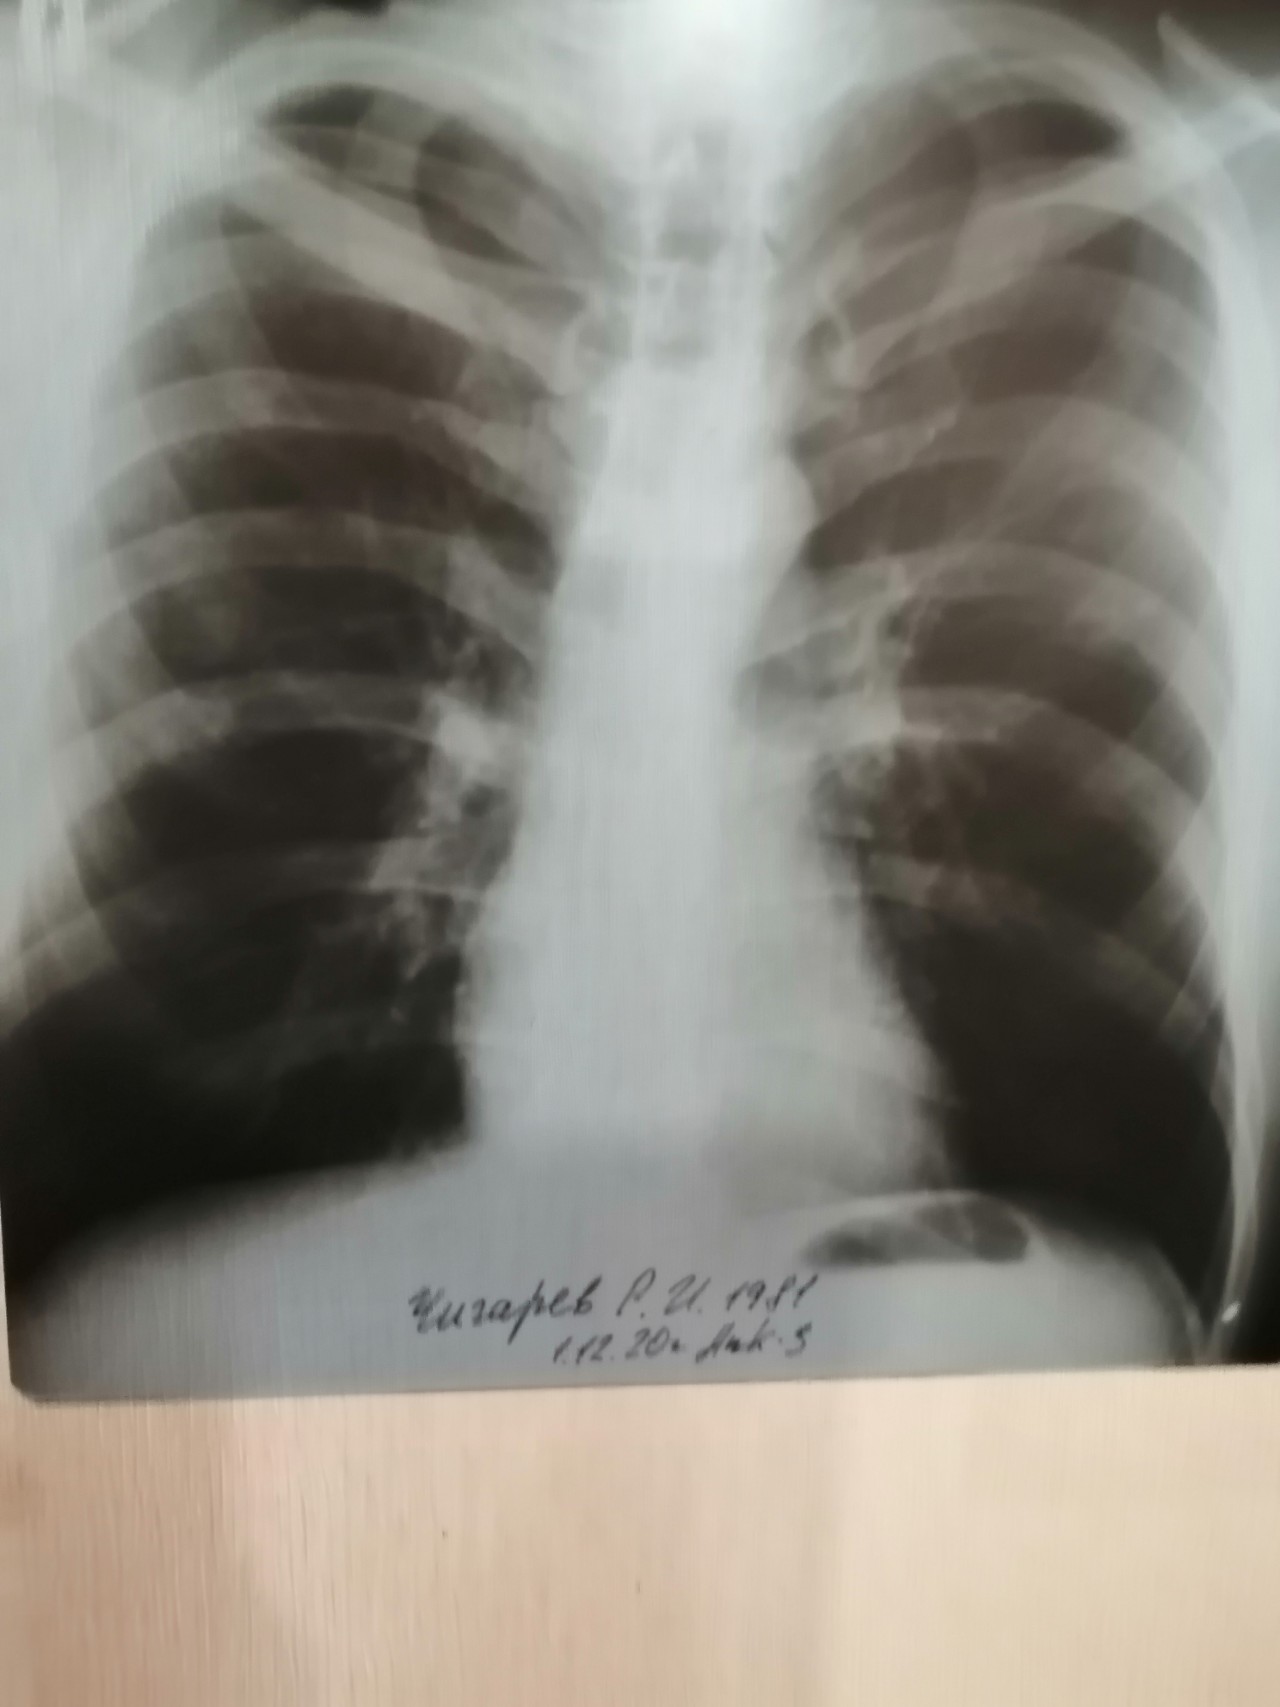 1 поражения легких. Снимок лёгких при туберкулезе фото. 69 % Поражение лёгких. Инфертивное поражение легких.